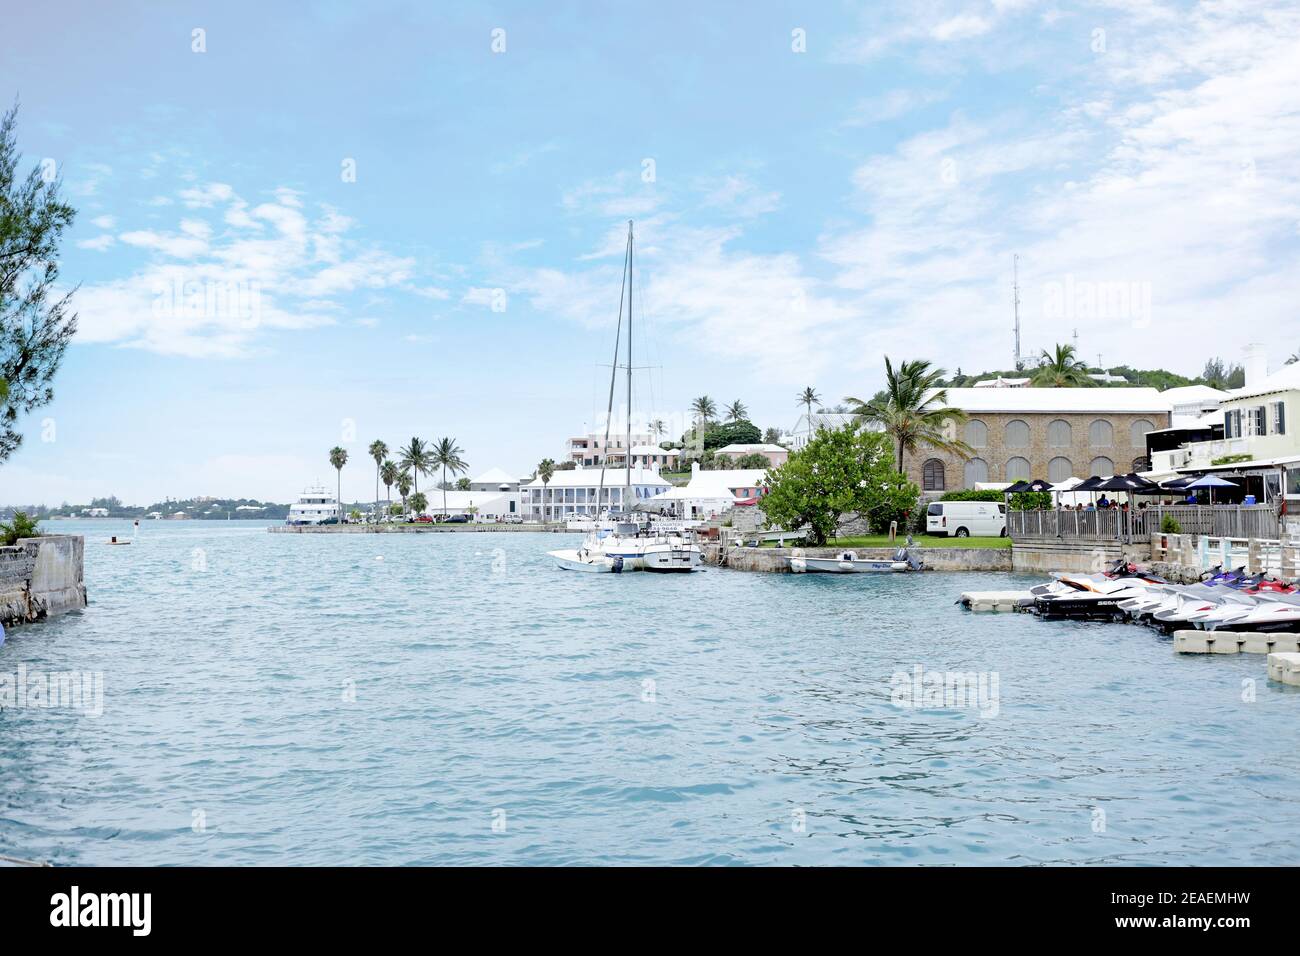 Baie, marina au bord de l'eau de la côte des Bermudes, avec voiliers et motomarines. Beau ciel bleu et océan, clair et calme climat tropical. Banque D'Images